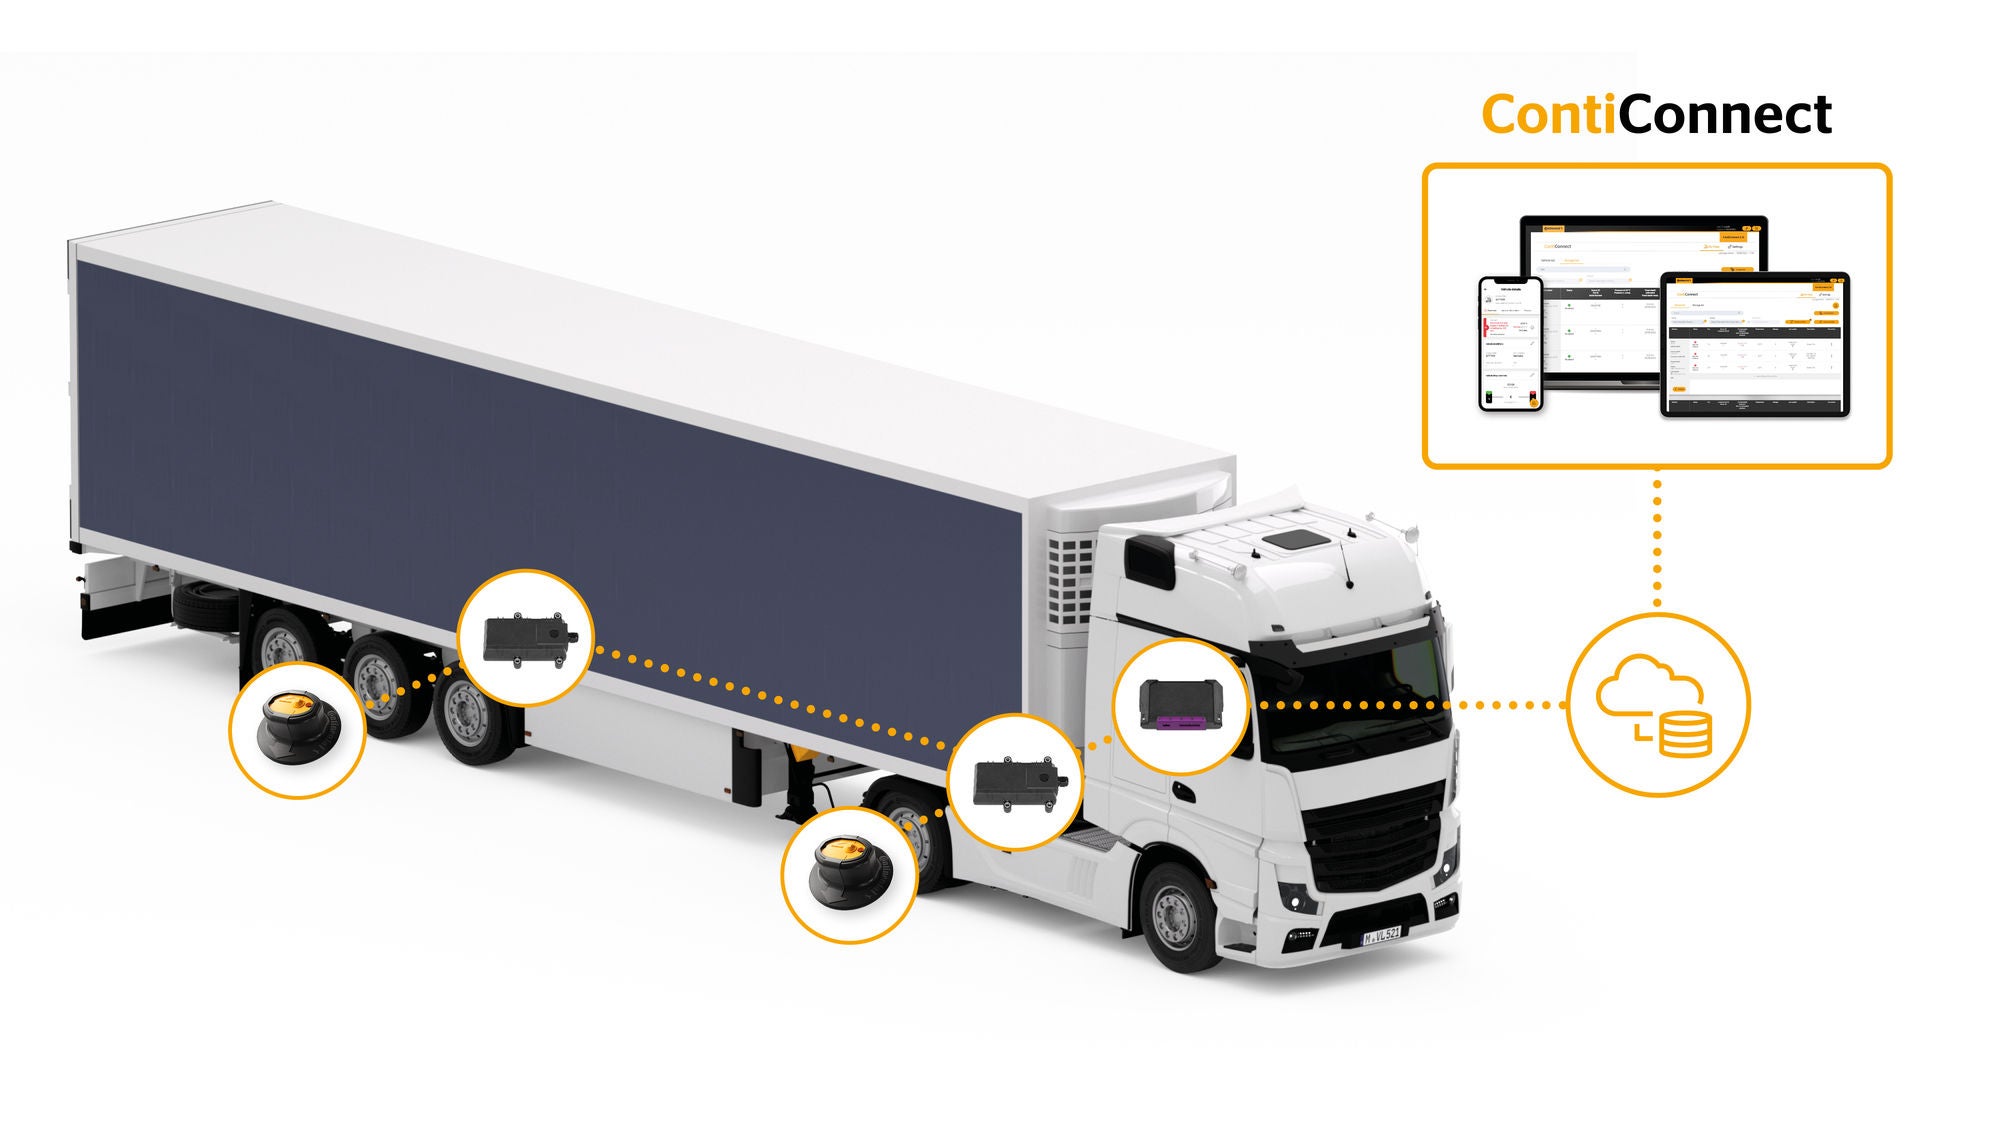 ContiConnect Sensoren, die in den Reifen Ihrer Flotte montiert sind, erfassen während der gesamten Fahrt die Reifendaten Ihres Fahrzeugs, welche über die Truck-Einheit dauerhaft an ContiConnect übermittelt werden.